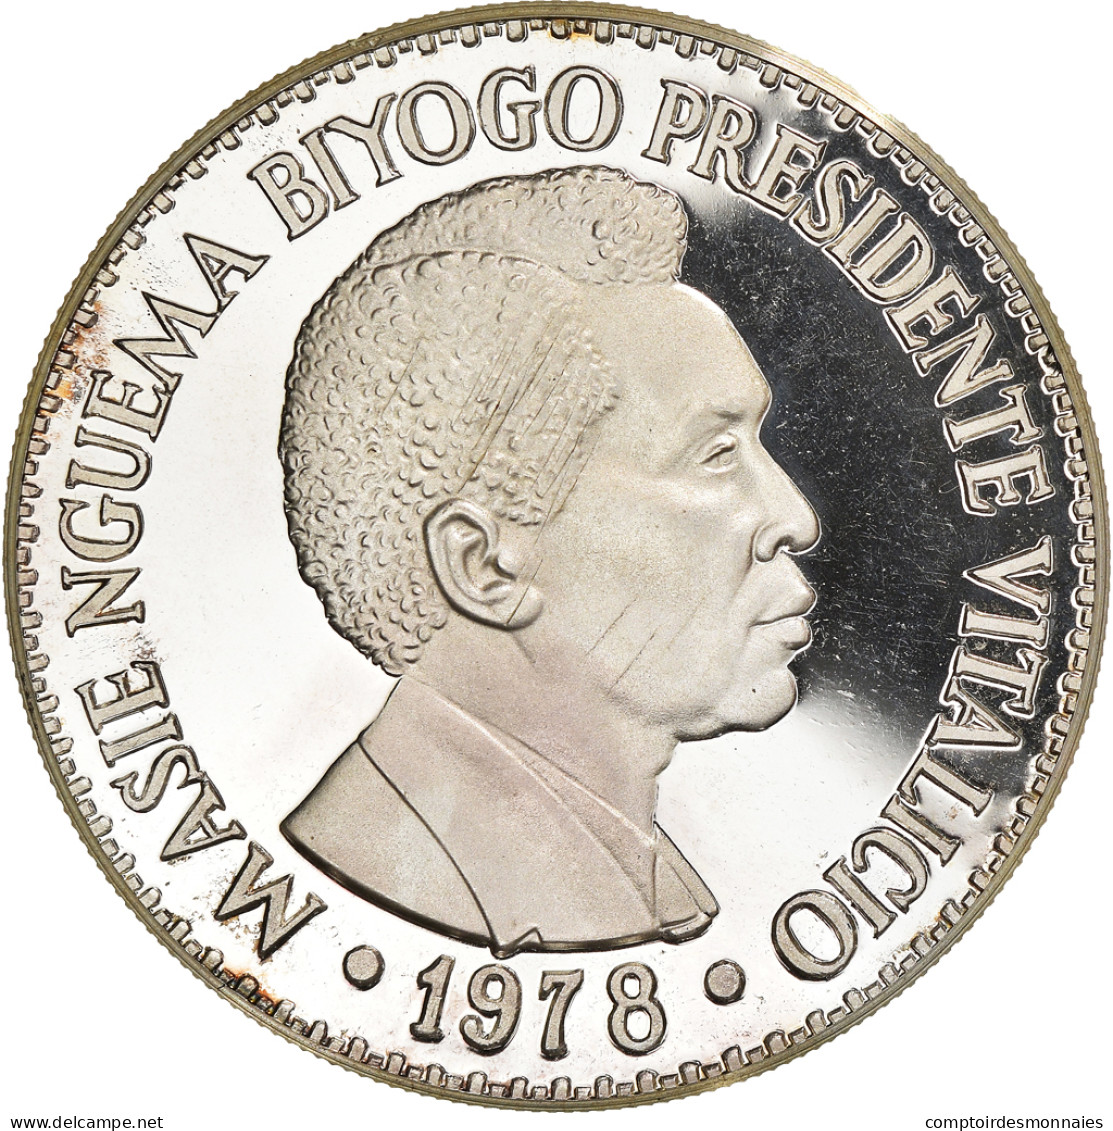 Monnaie, Equatorial Guinea, 2000 Bipkwele, 1978, Trial, SPL, Argent, KM:TS7 - Equatorial Guinea